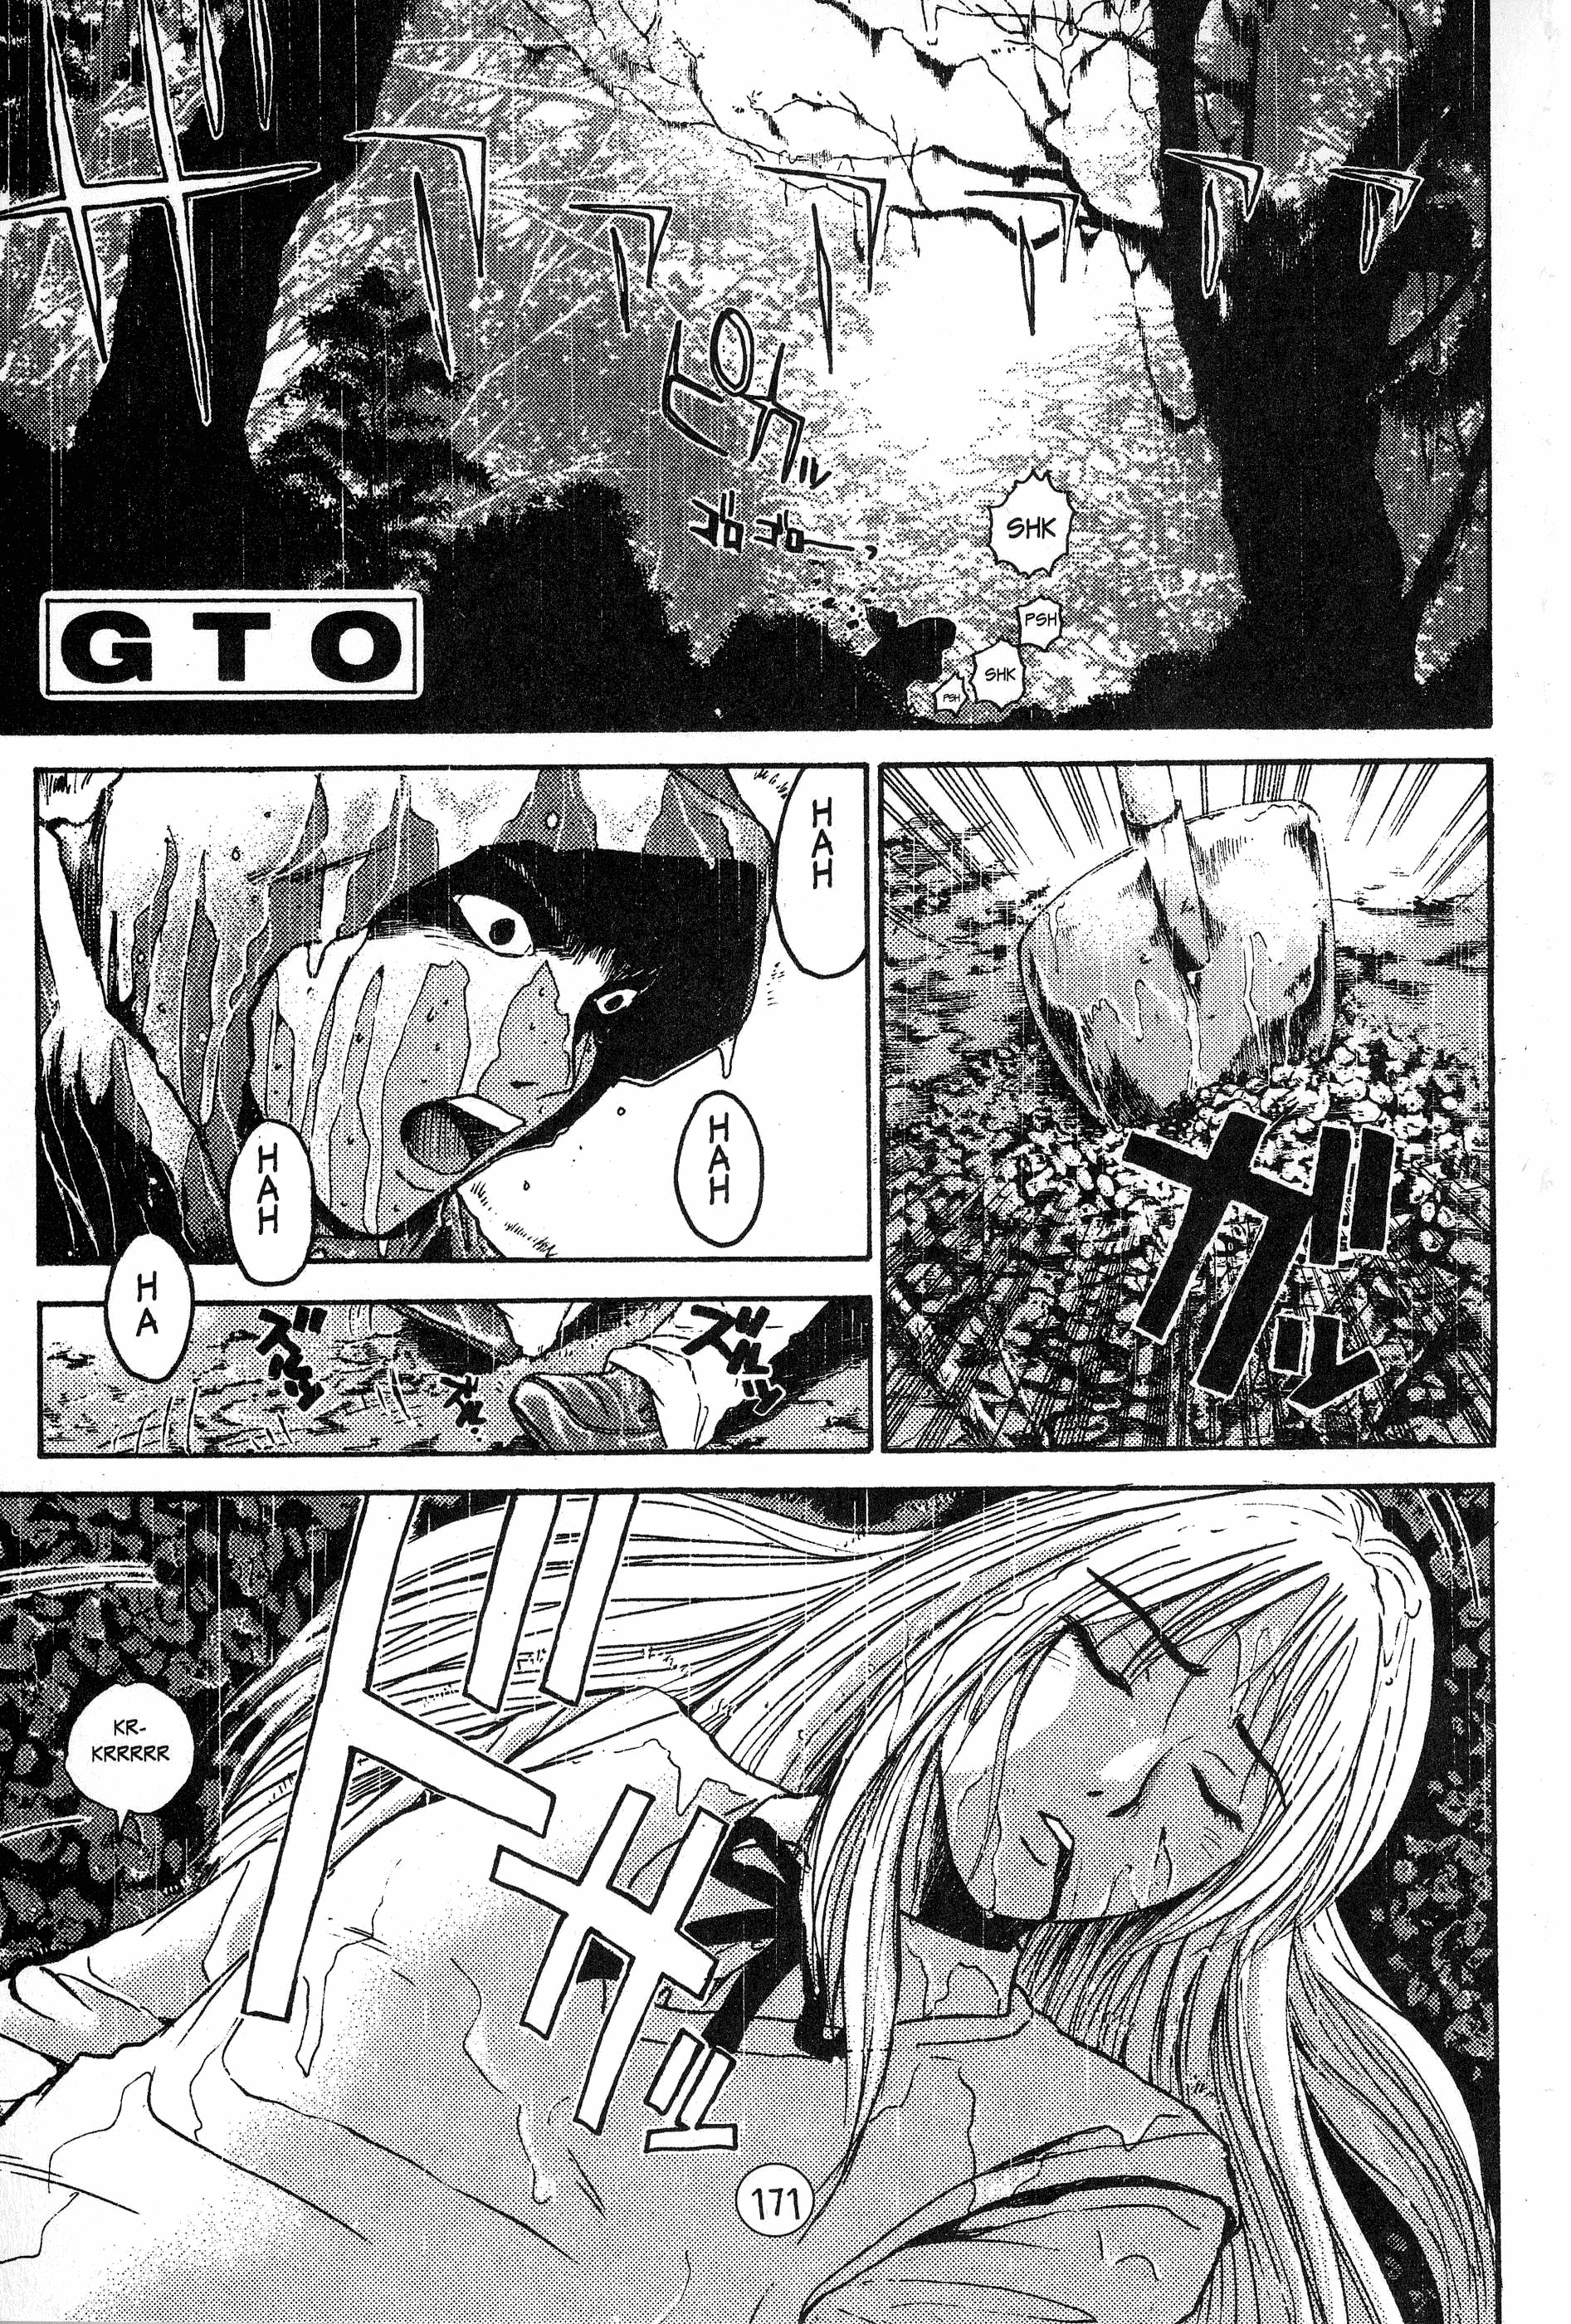 Gto - Page 1